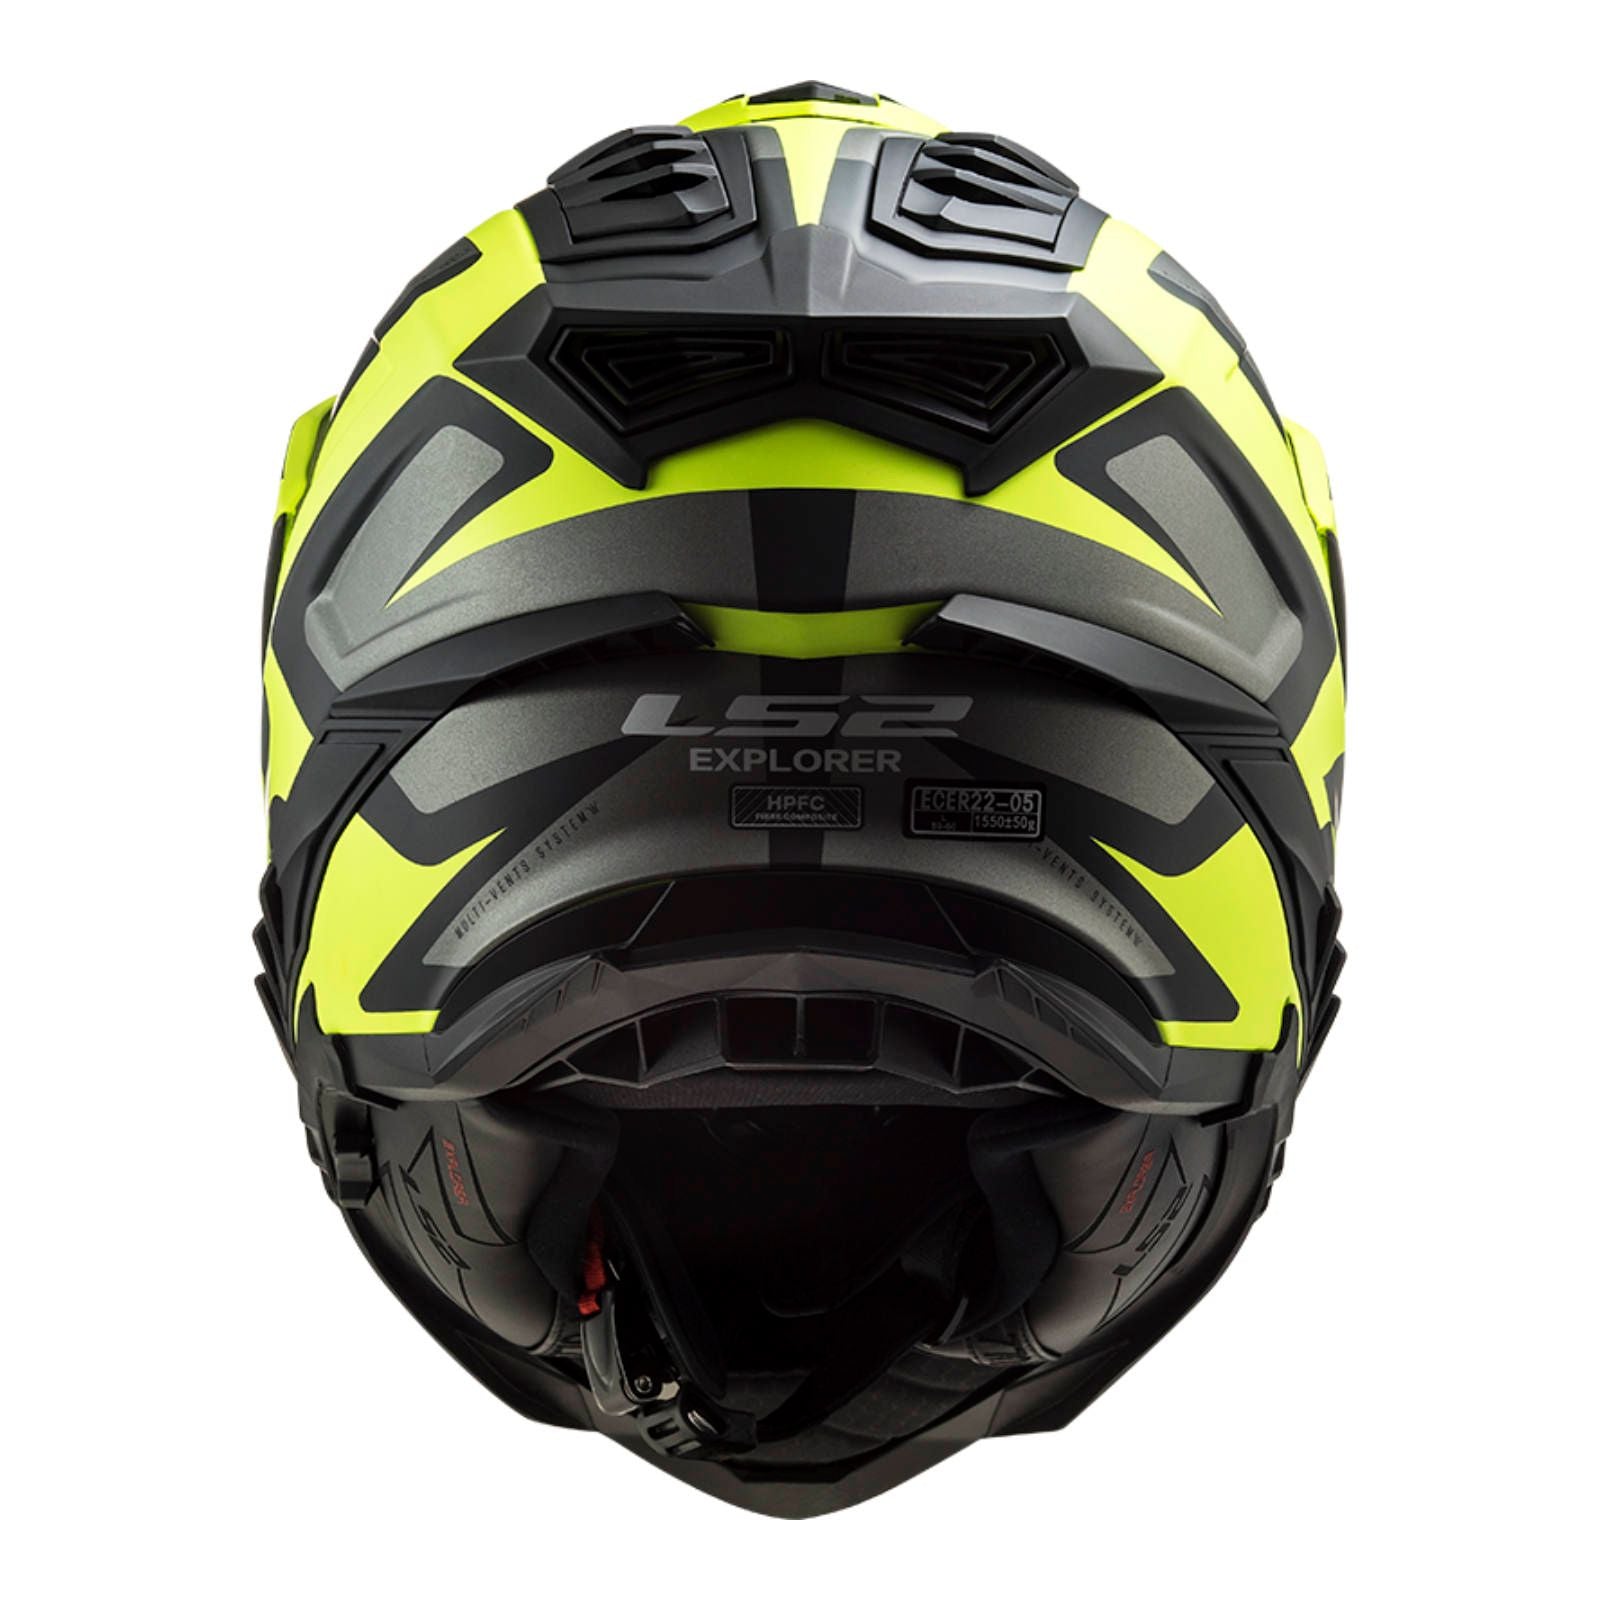 New LS2 Explorer Alter Helmet - Matte Black / Hi-Vis (XL) #LS2MX701ALTMBYXL